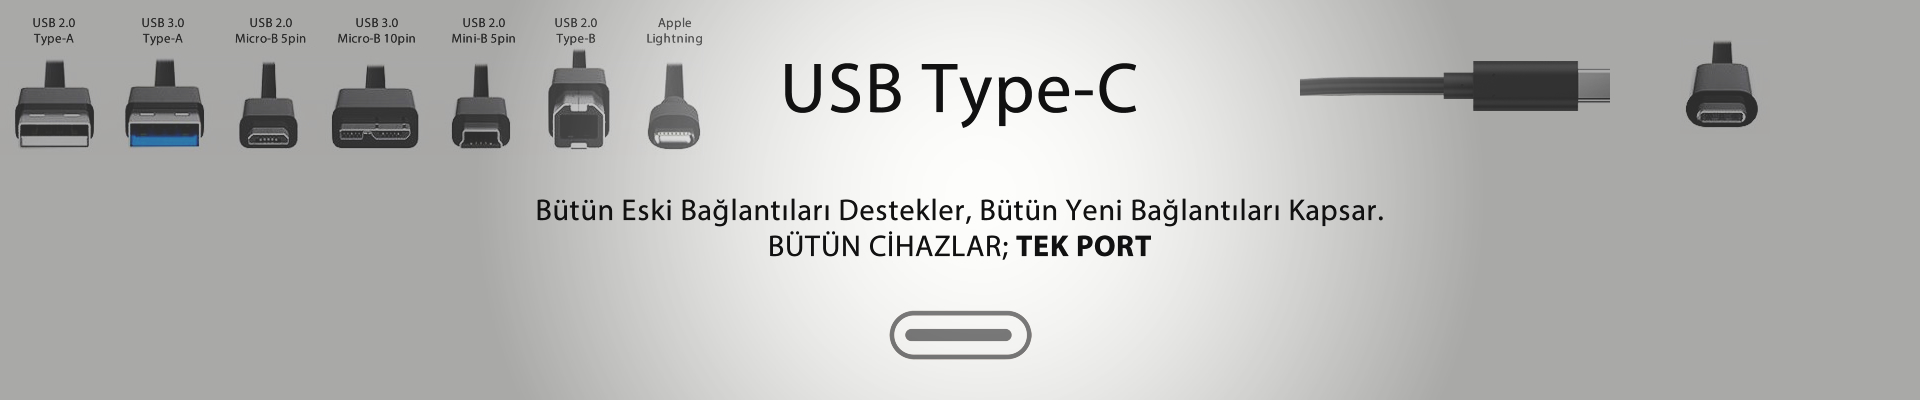 USB Type-C Nedir?